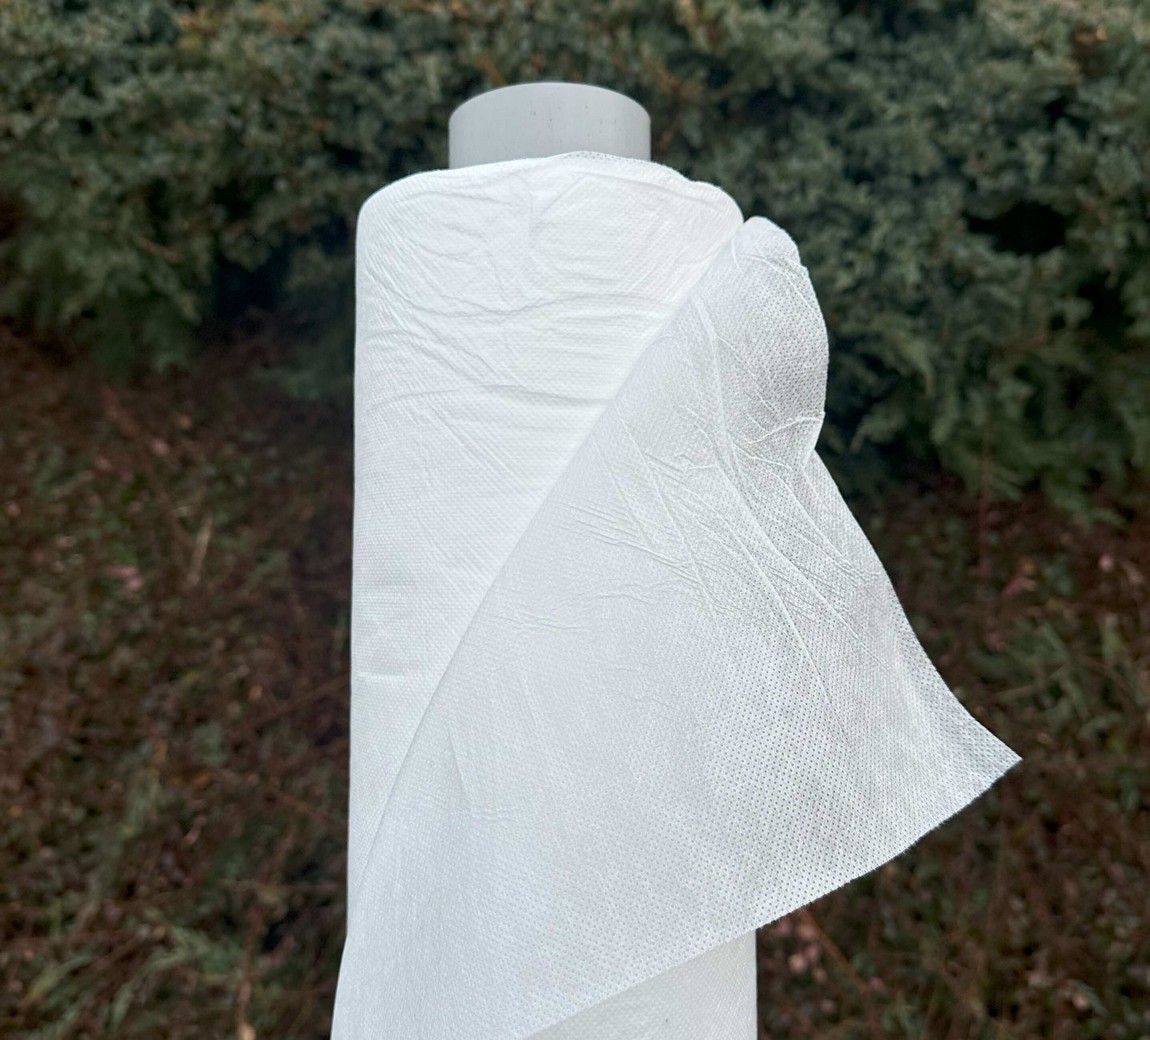 Jutabond Netkaná textílie proti mrazu, 50g/m2, 50m x 3,2m - bílá EXTRA SILNÁ ZAHRADA Sklad6 0375